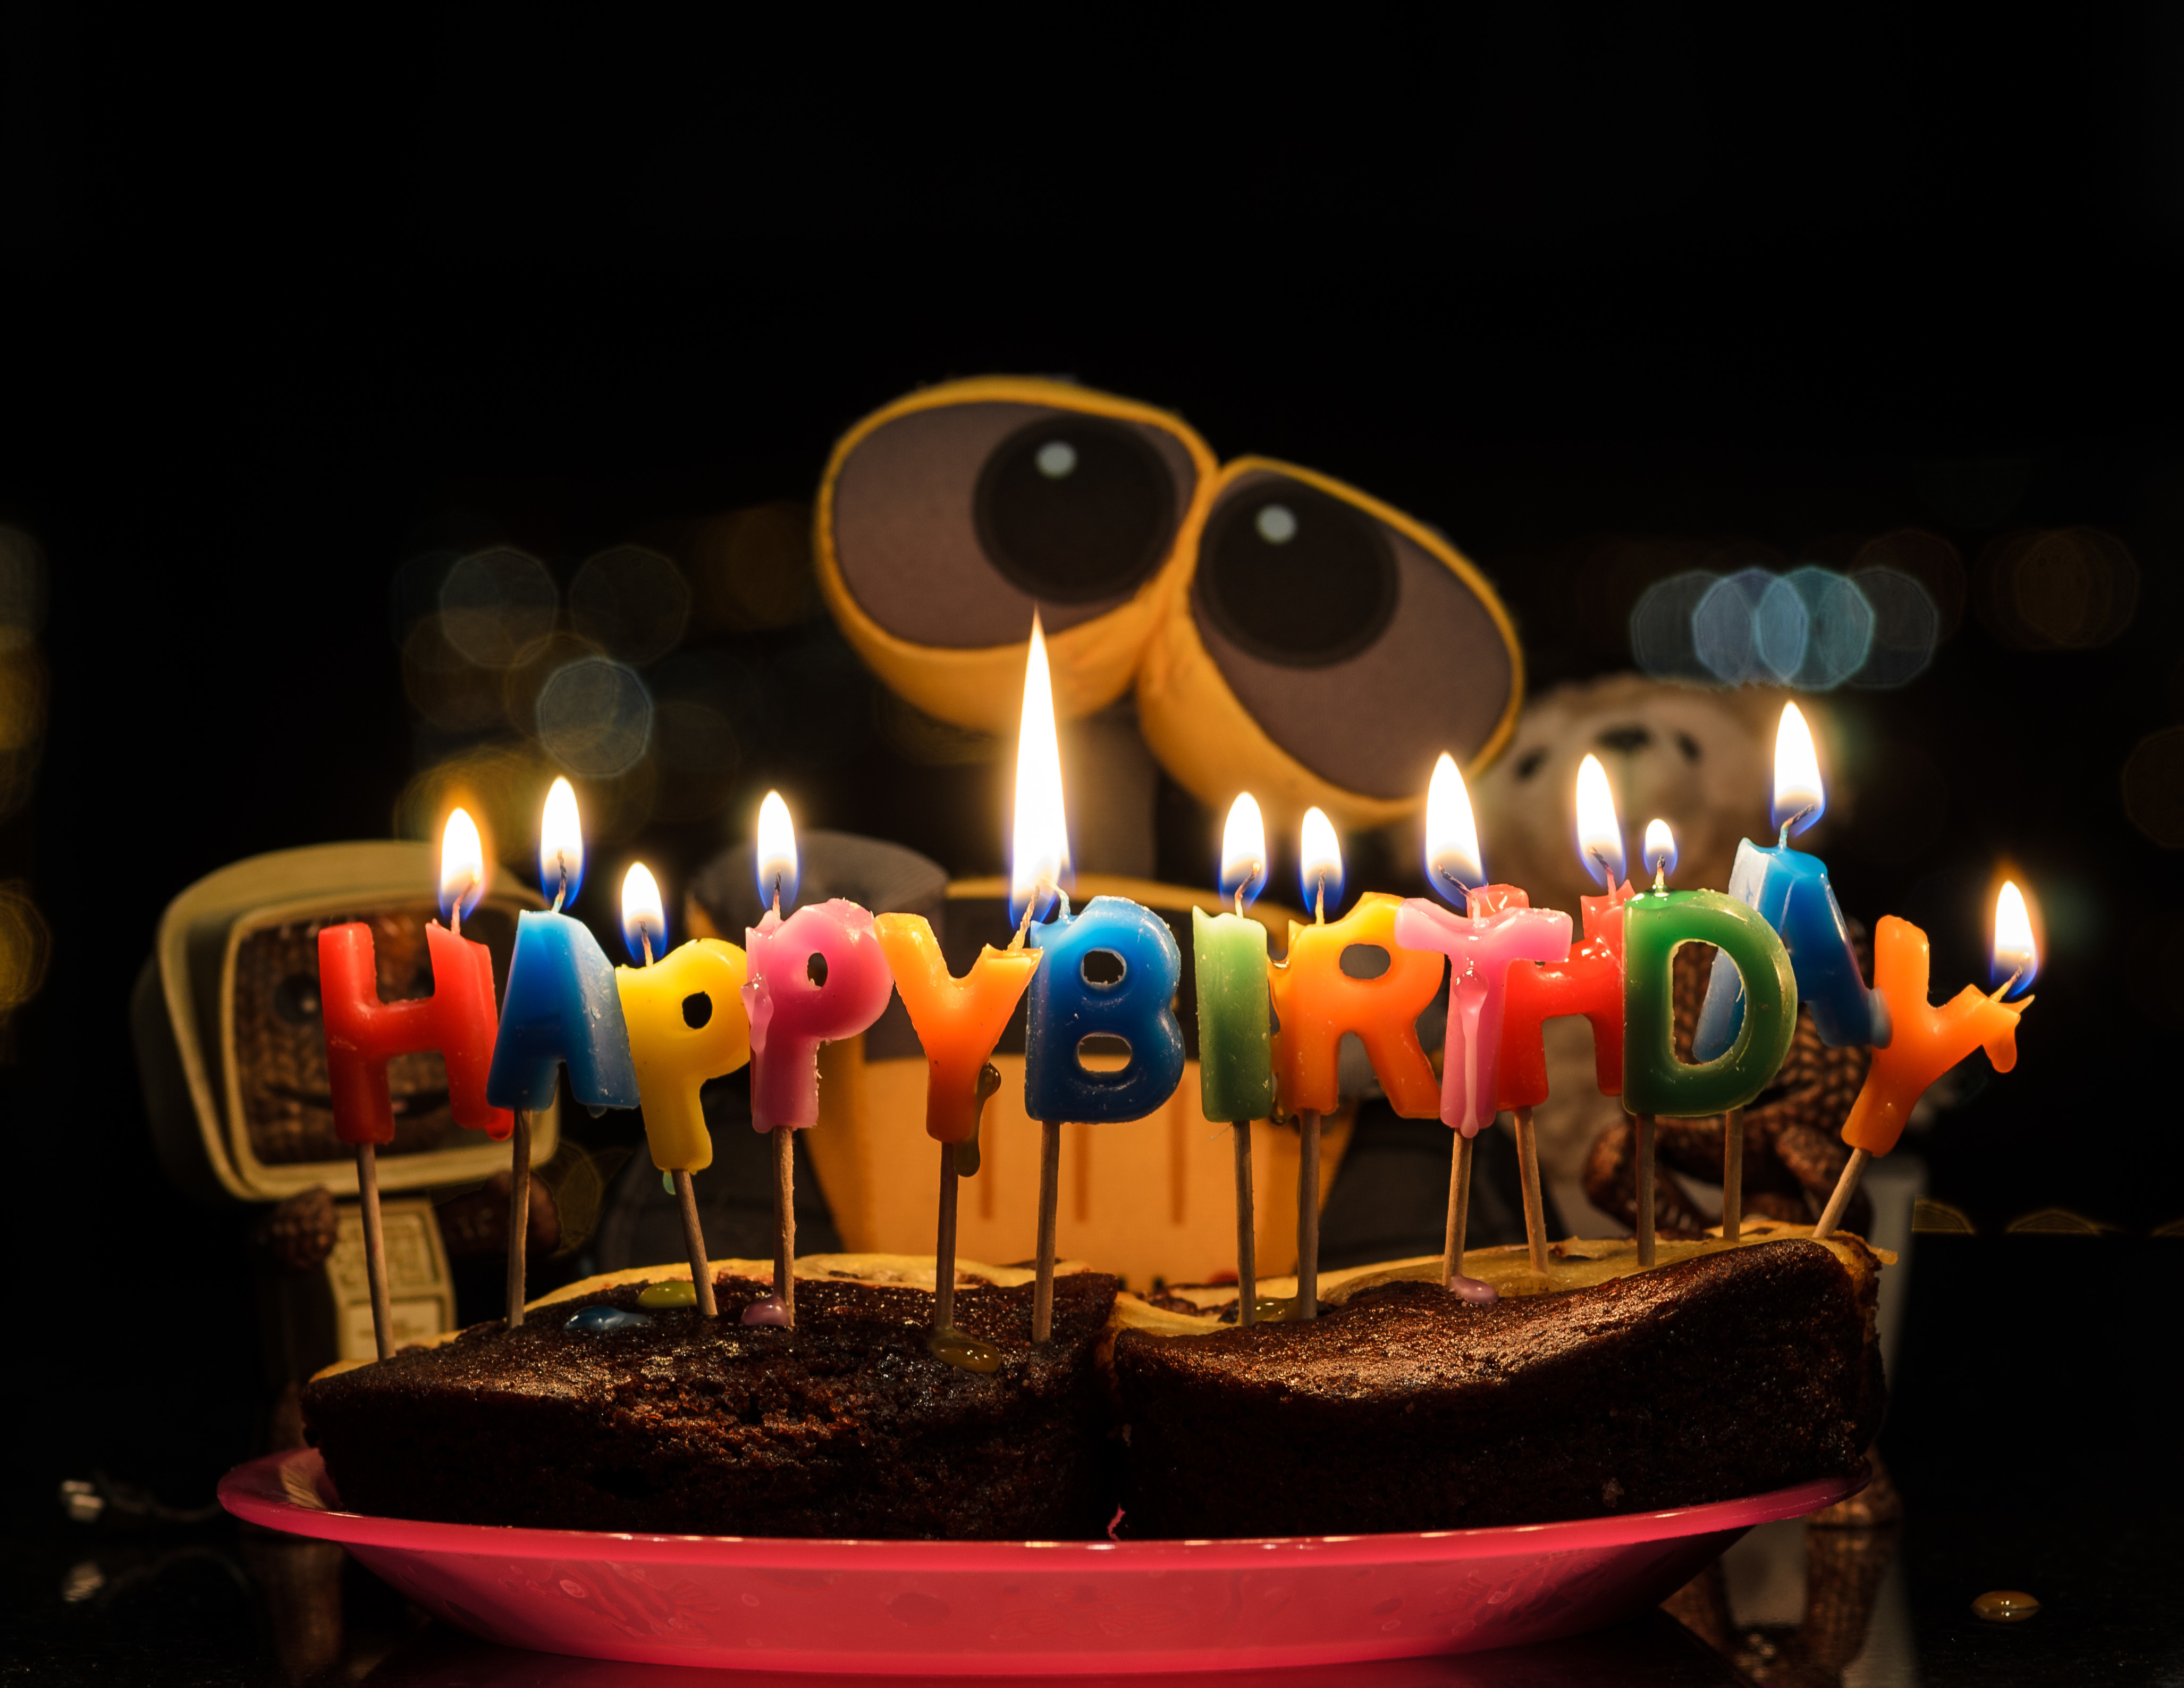 валли, день рождения, пирог, -день рождения, candles, robot, cartoon, valle...